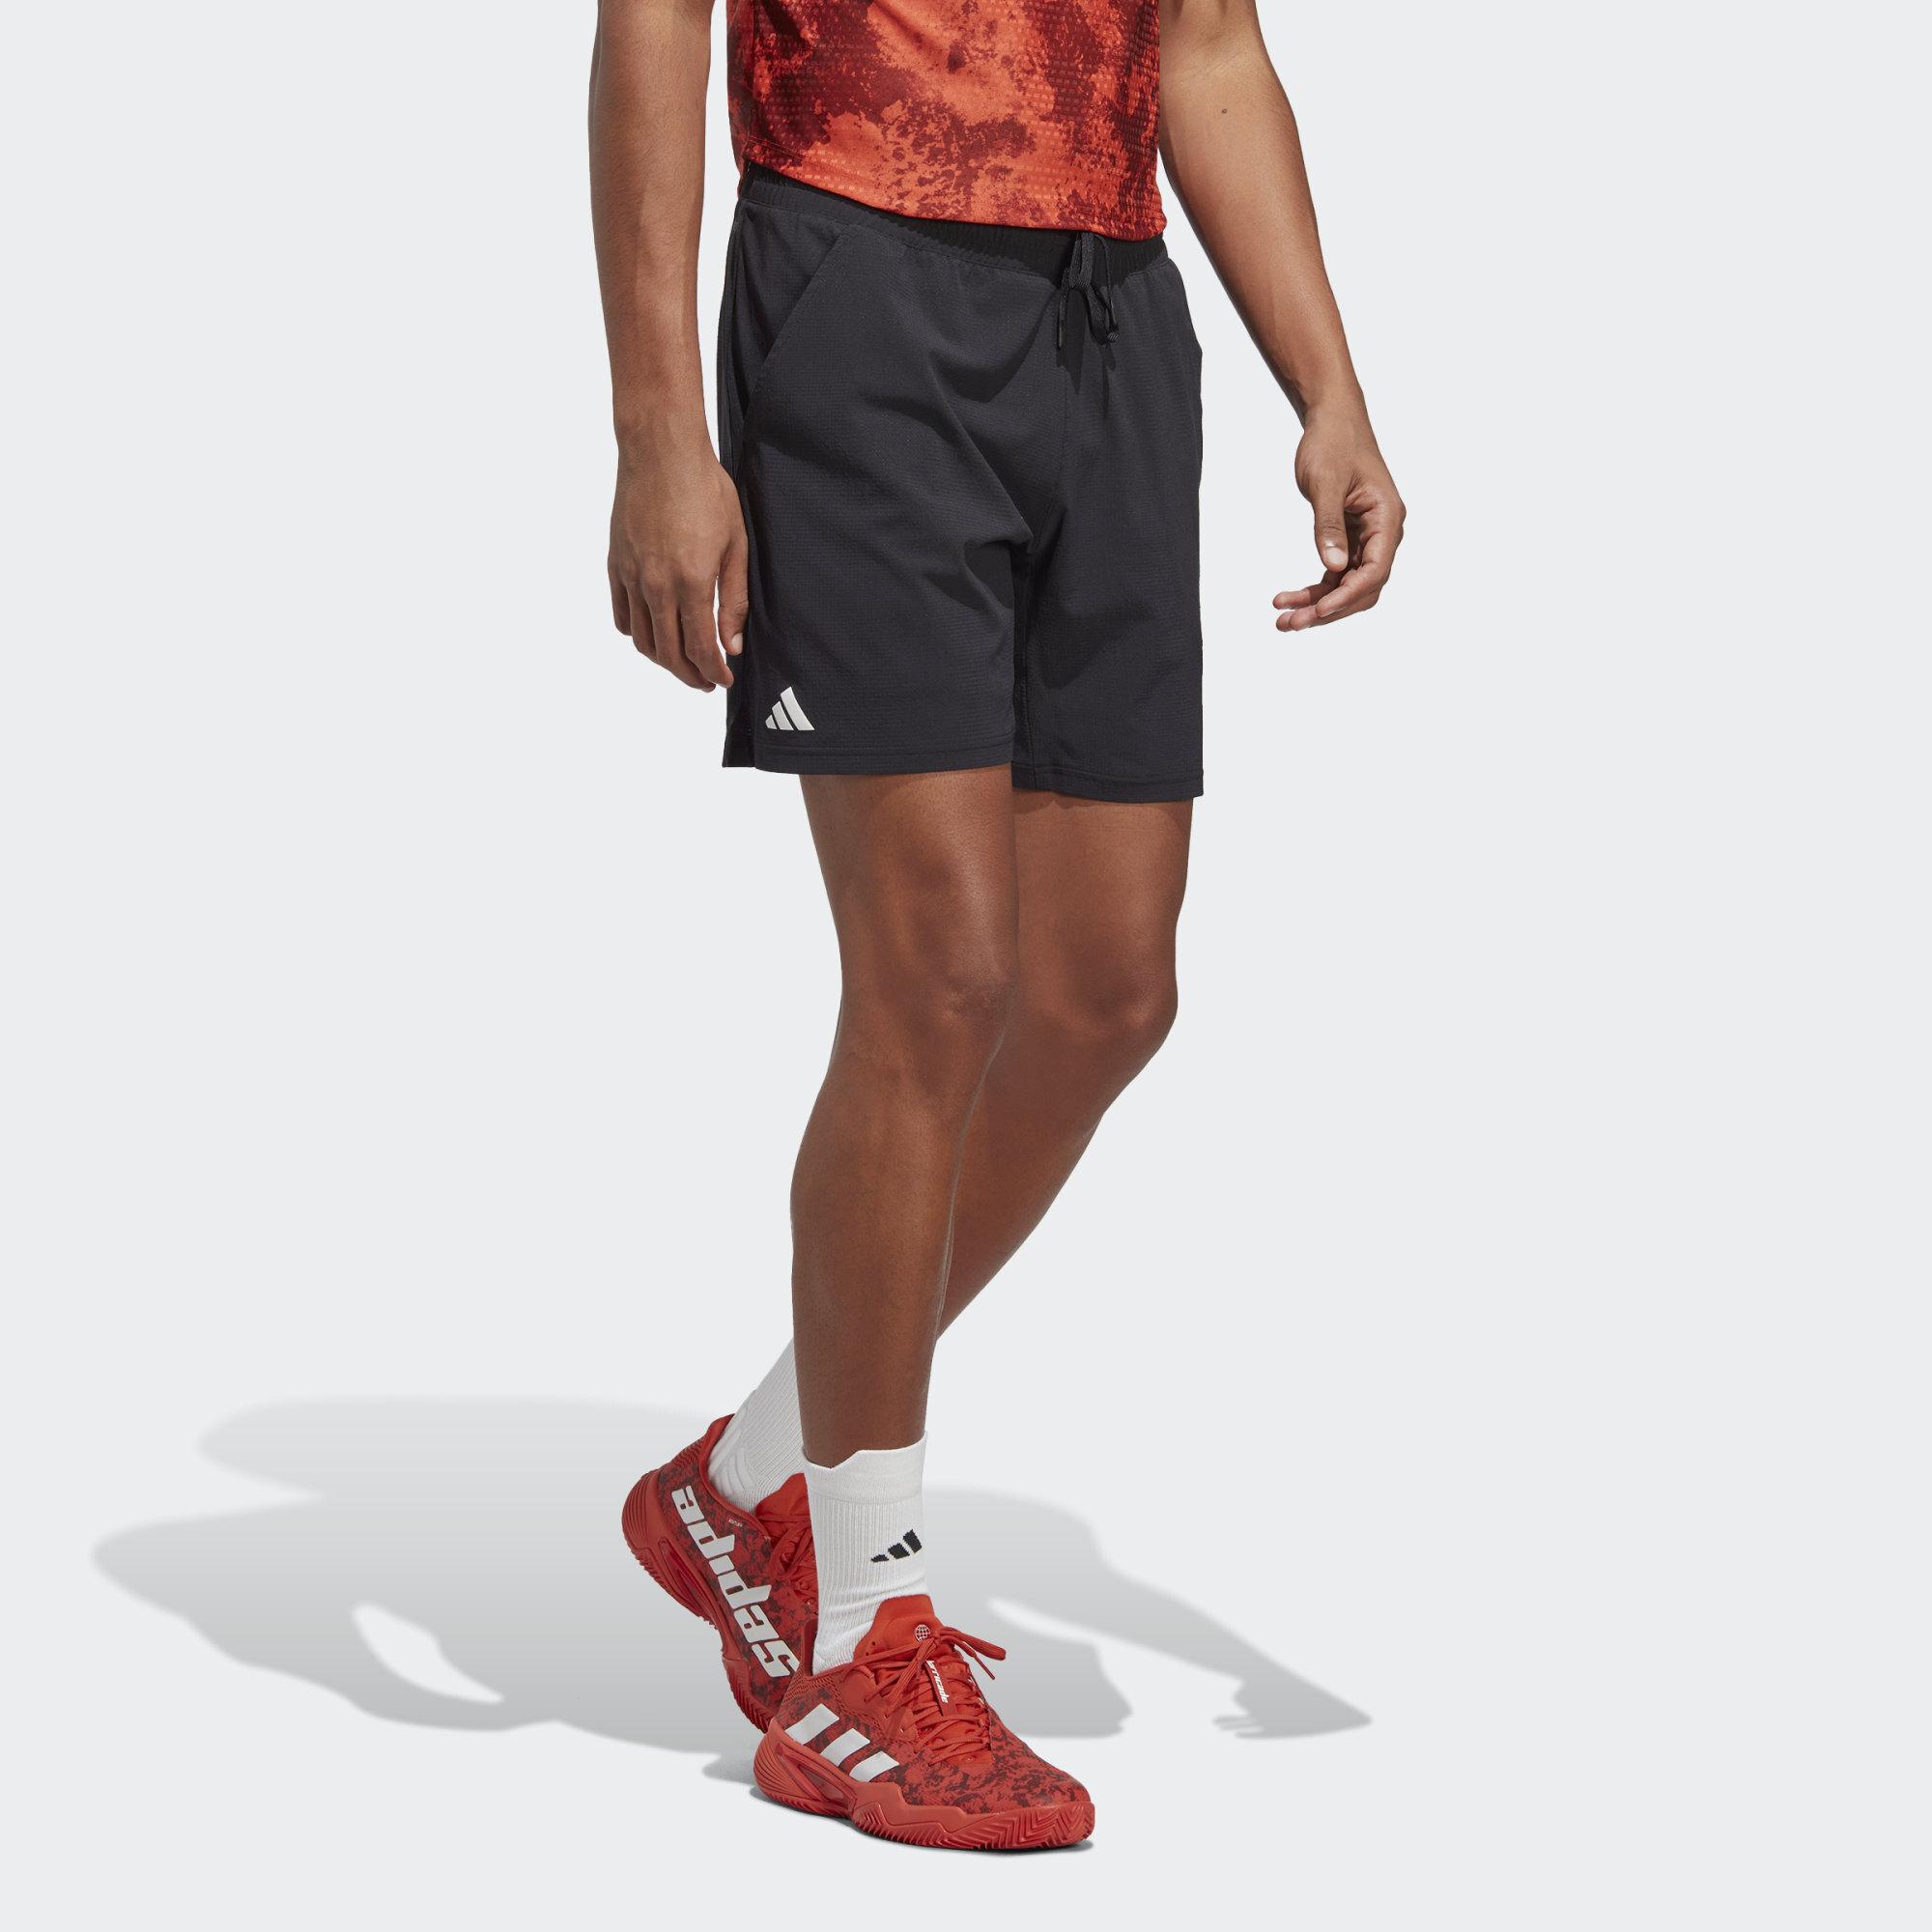 Ontbering Voor u Proportioneel Hosen mit climacool® von adidas | Online bei SportScheck kaufen